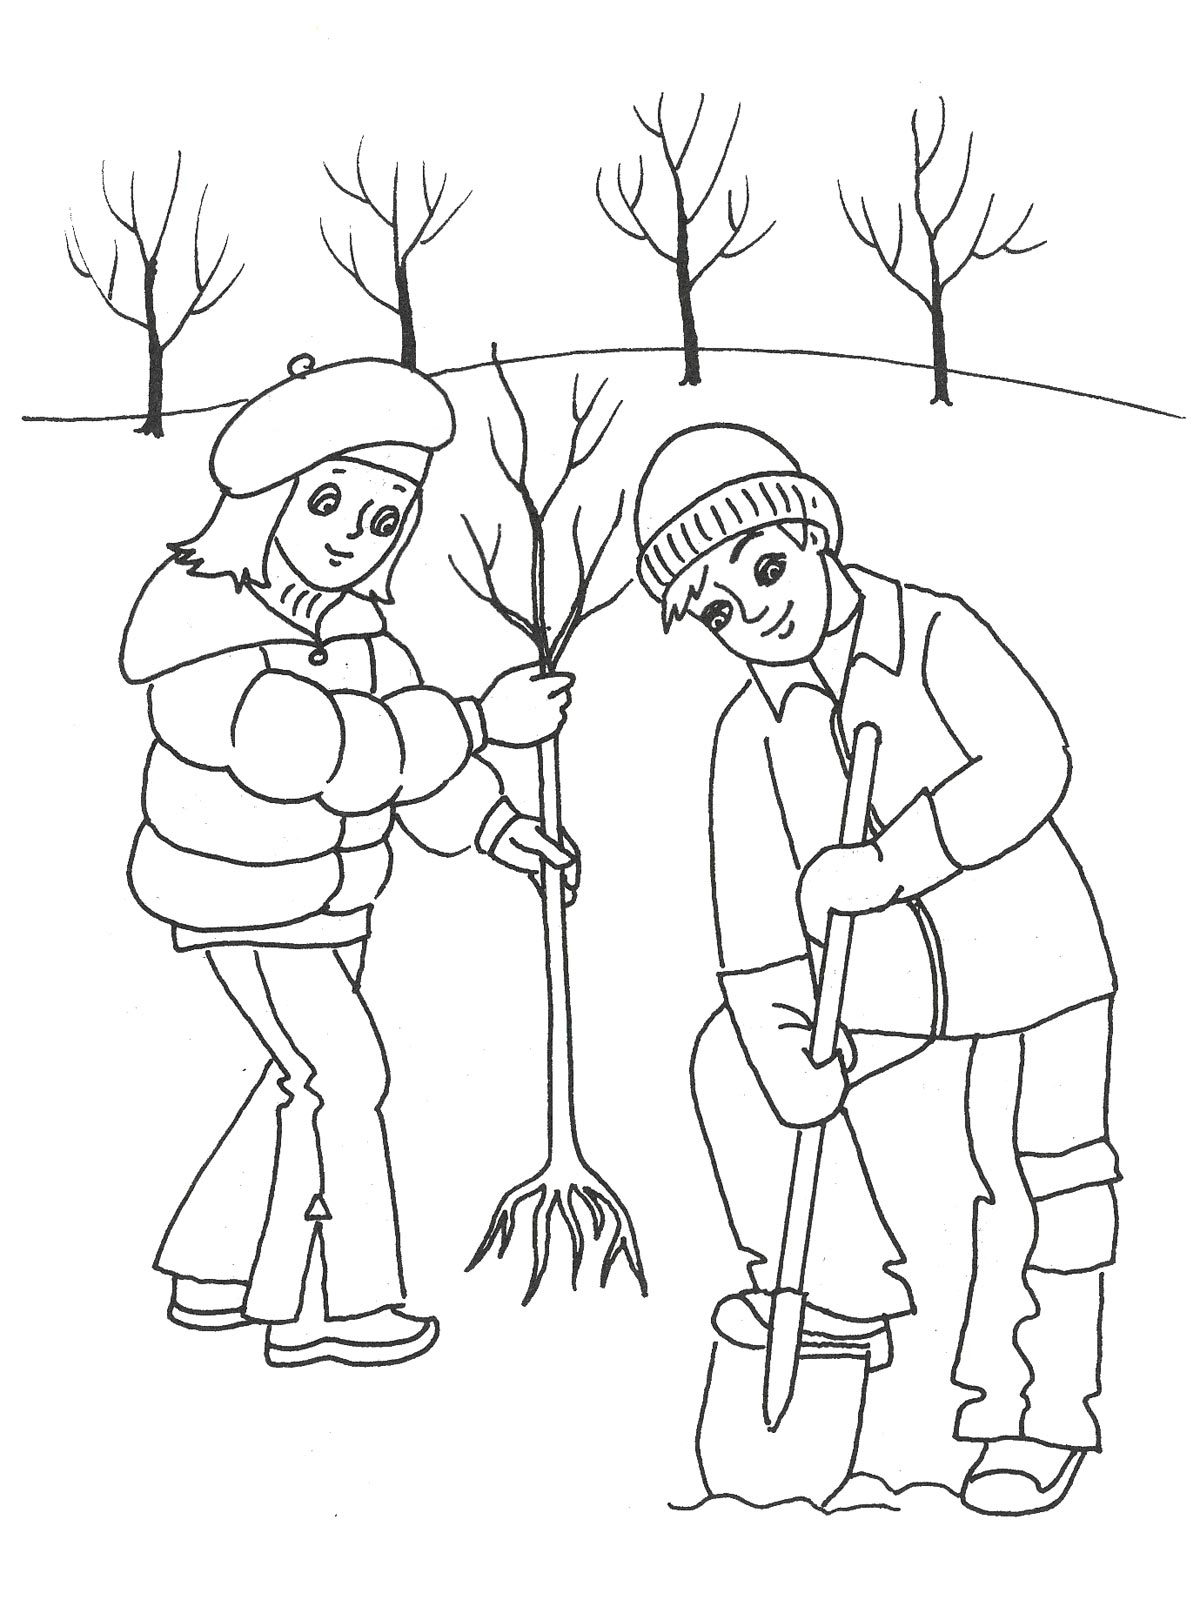 Дети сажают деревья